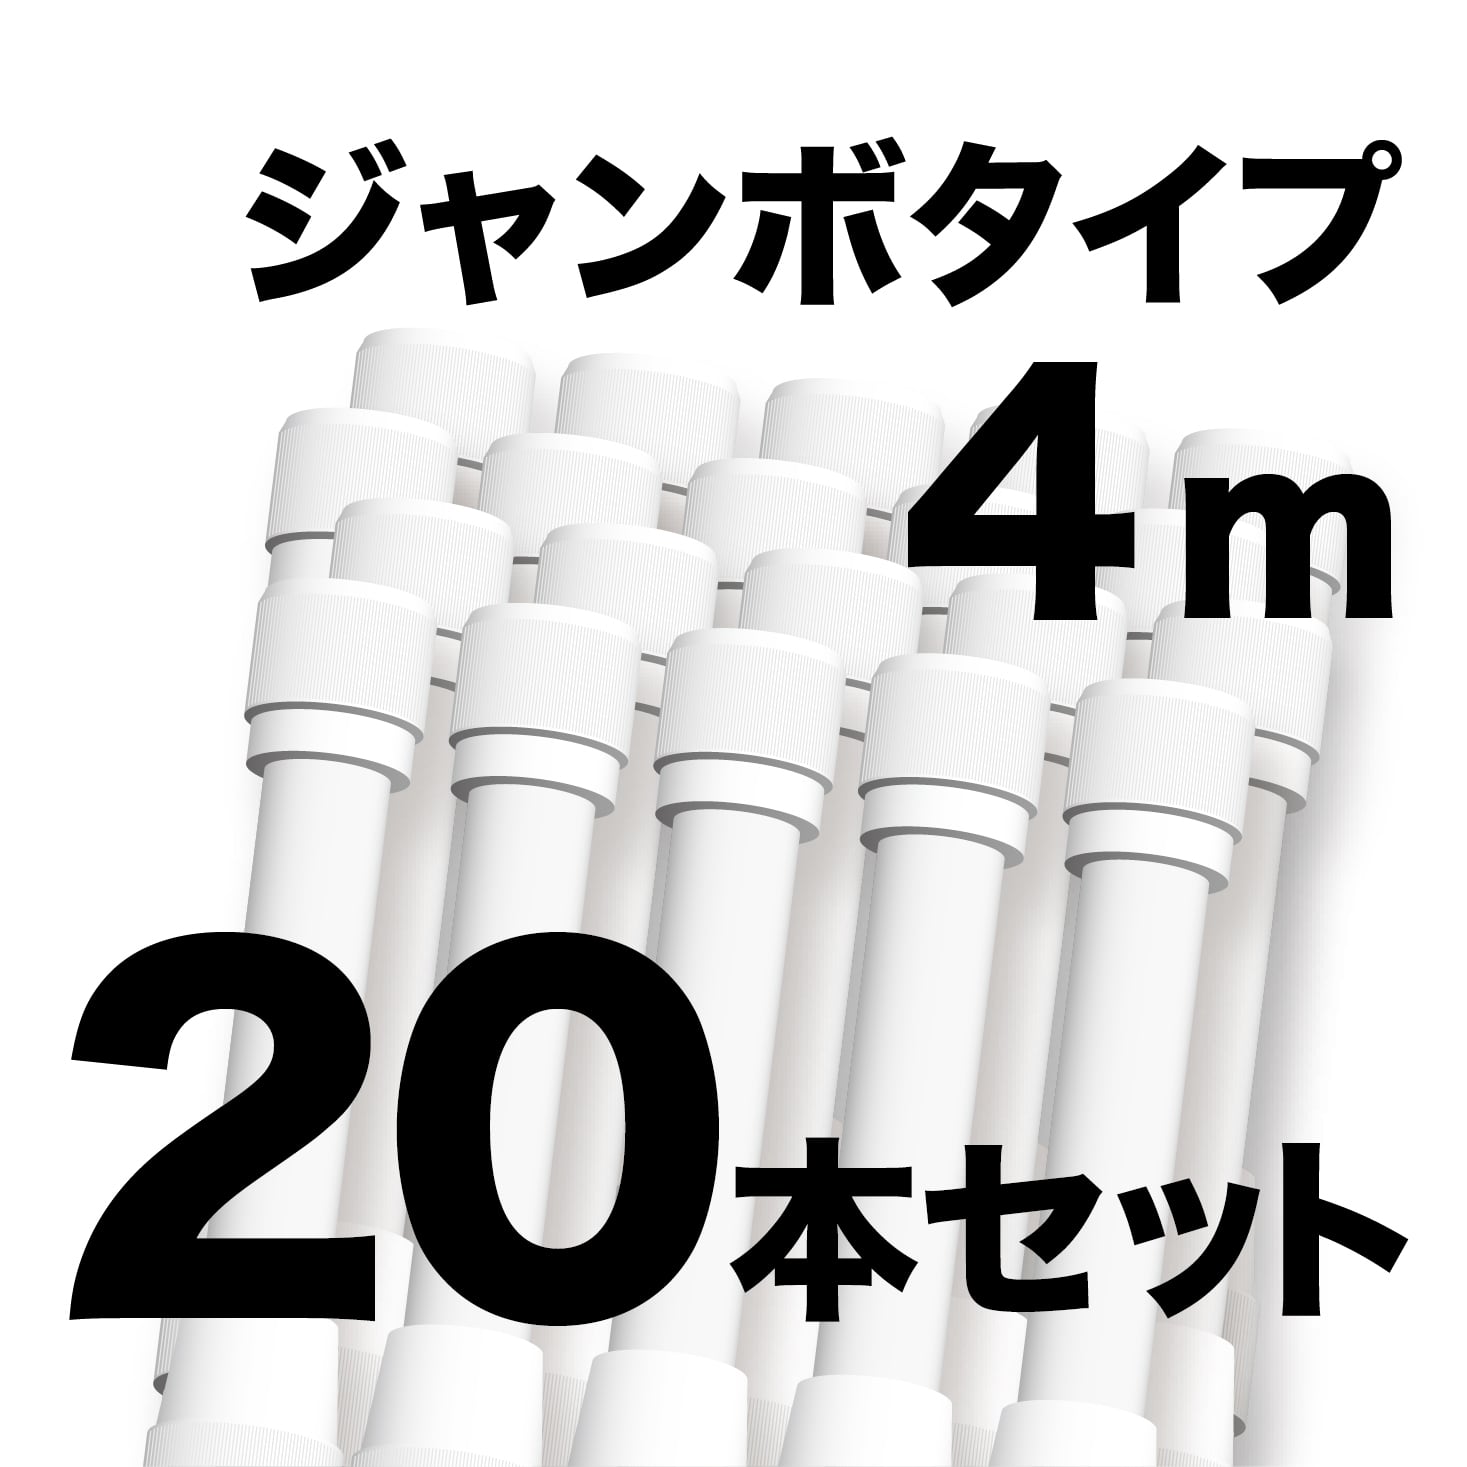 ジャンボ のぼりポール 4m 白色 20本セット SMK-PW4M20 日本製 店舗販促用の資材に最適 NOBORI the Shop